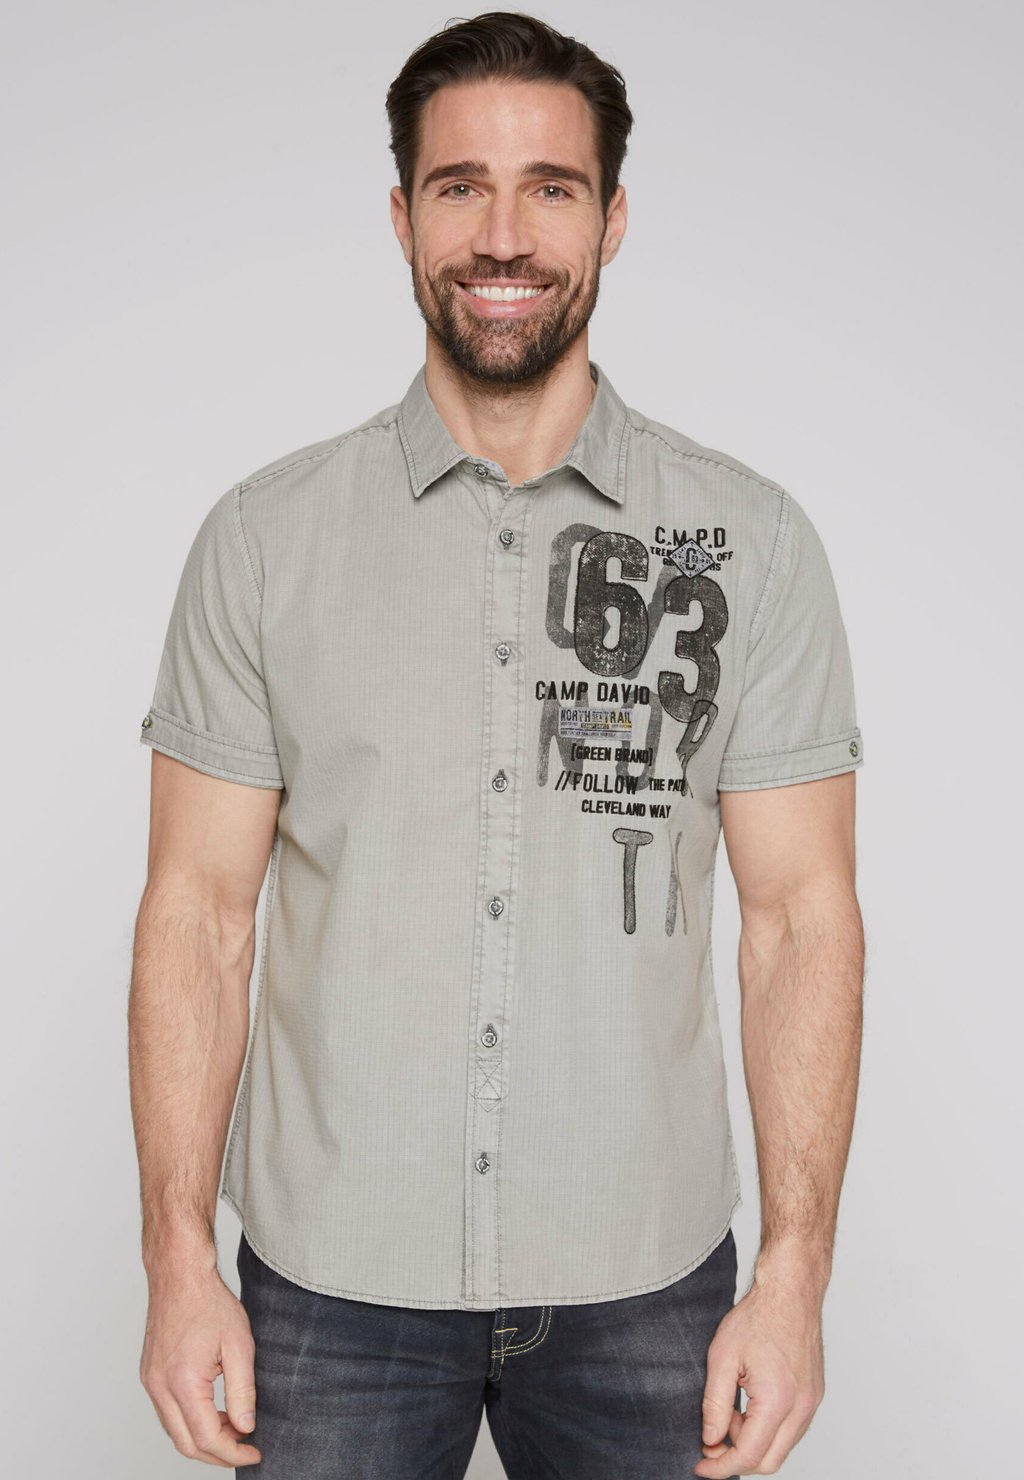 Рубашка MIT ARTWORKS Camp David, цвет polo grey рубашка mit klappentaschen camp david цвет light grey bleached